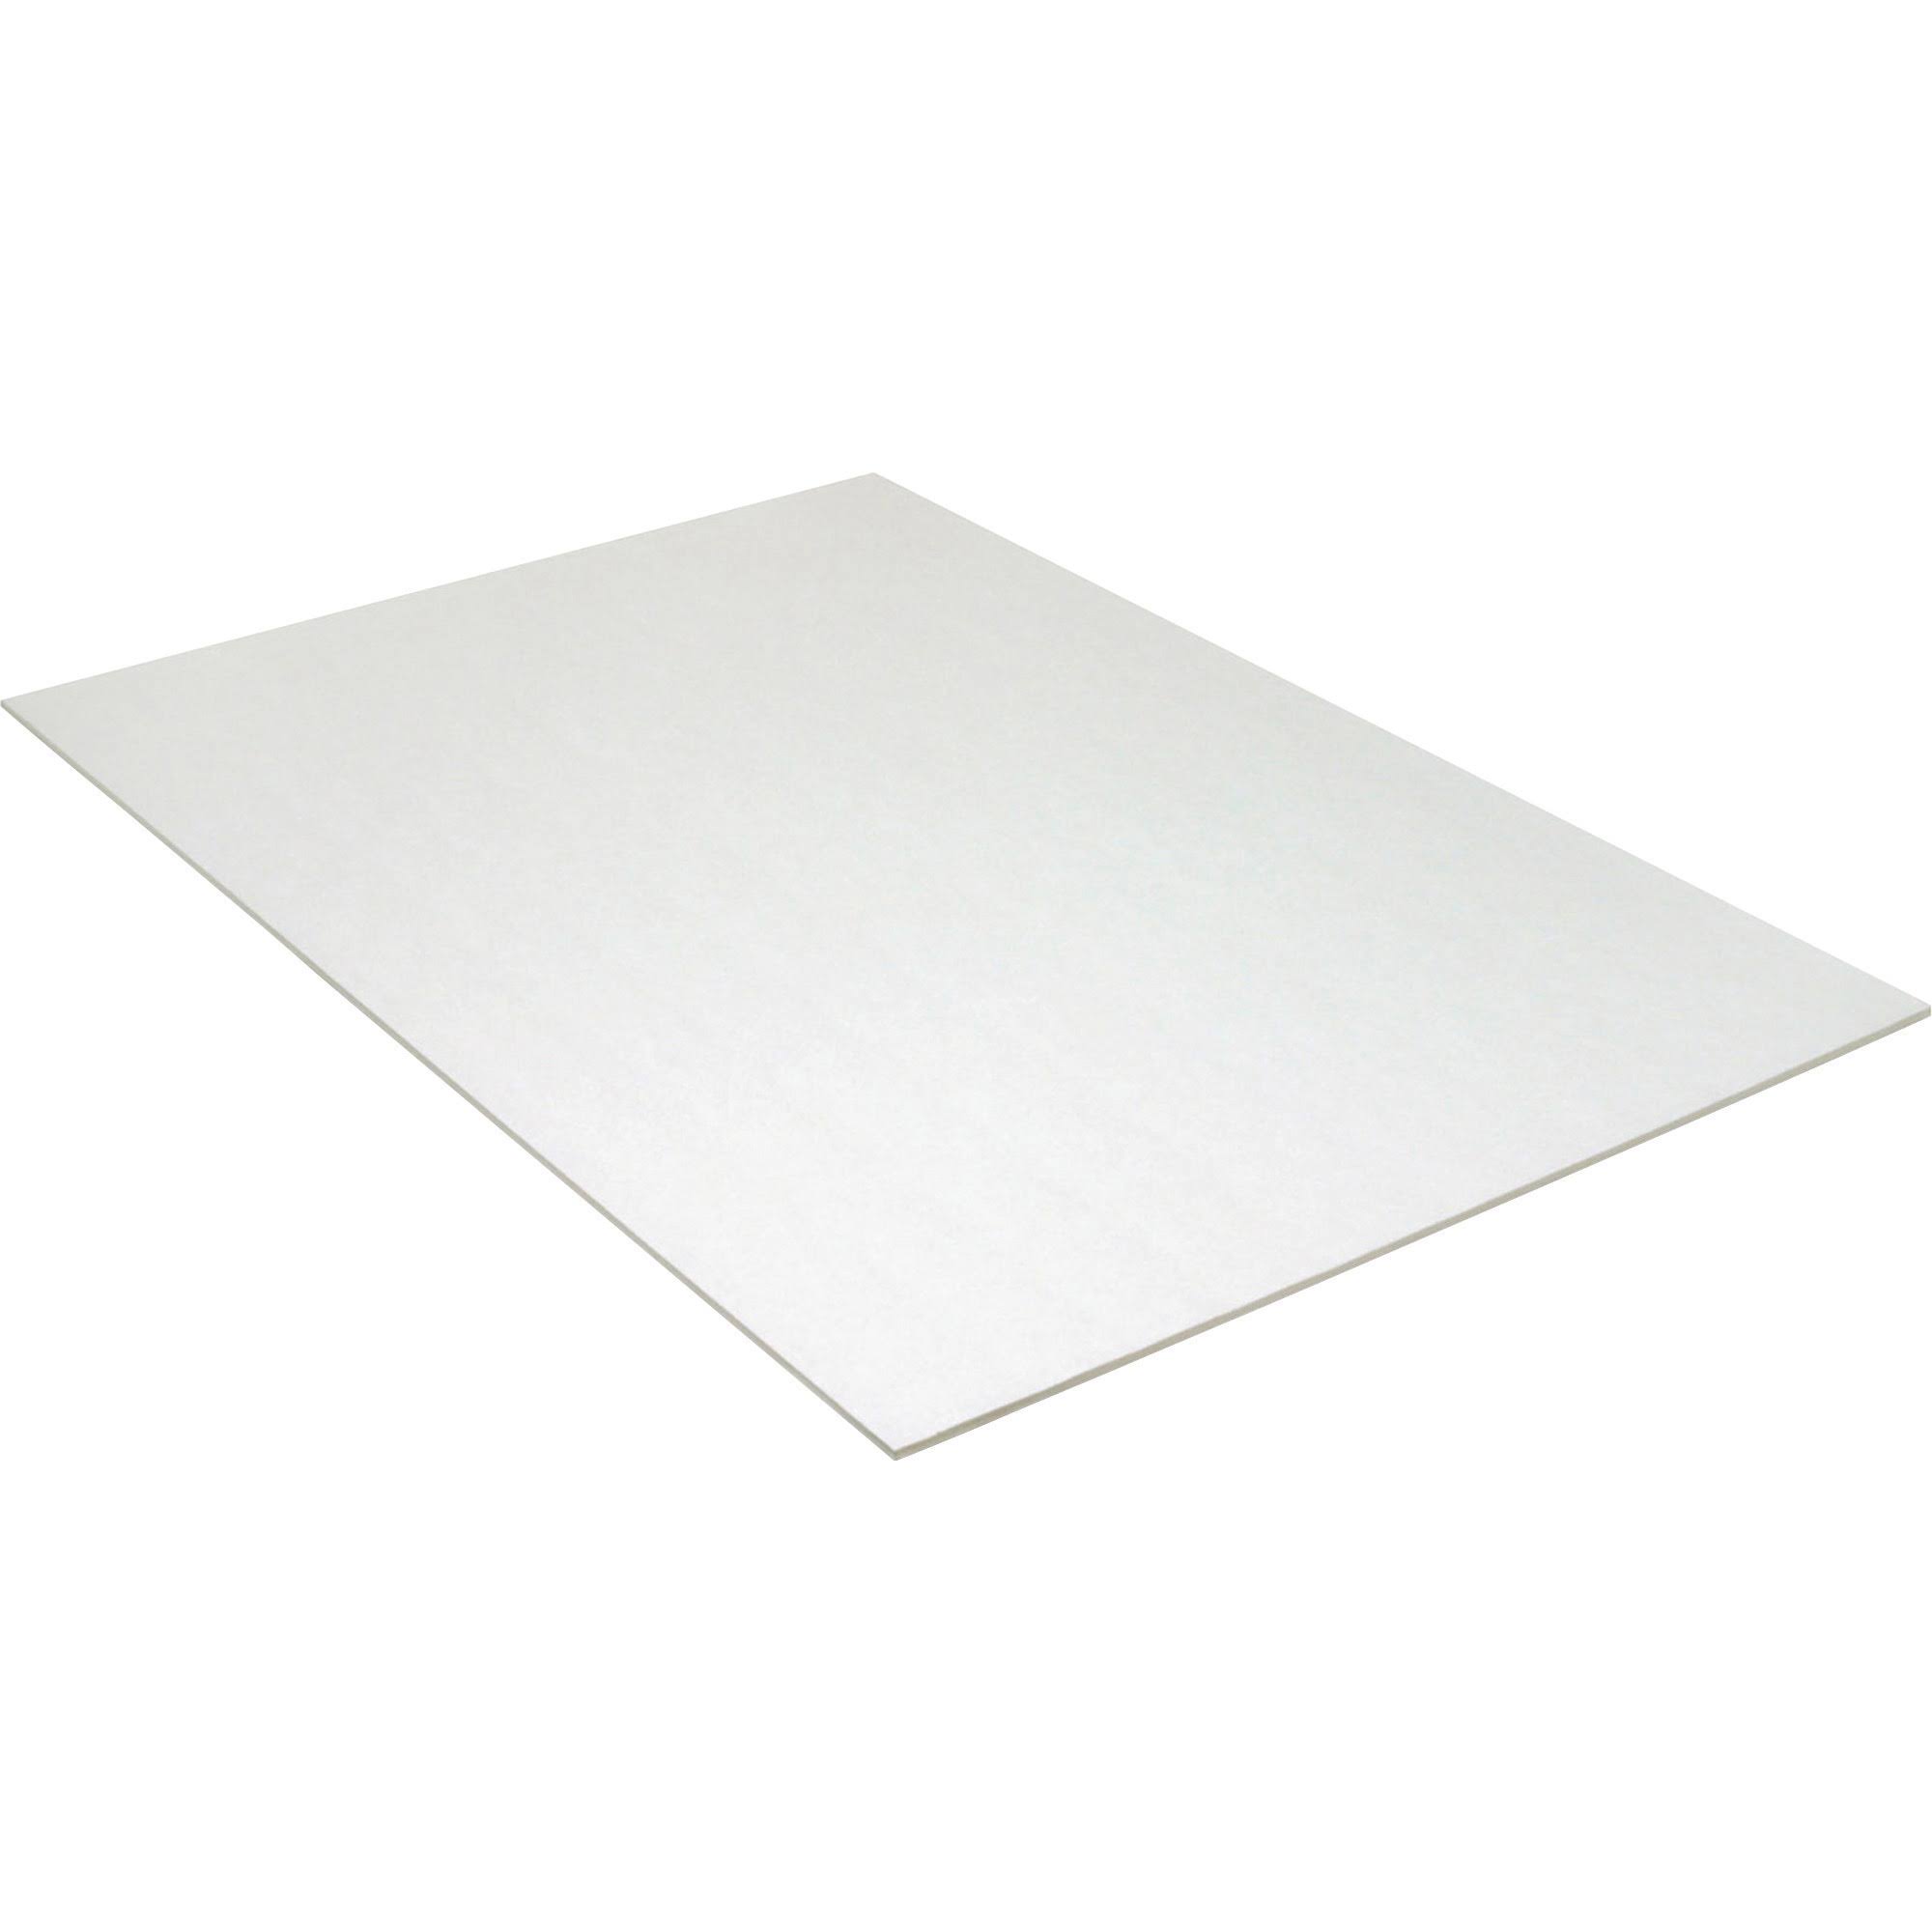 Pacon Foam Board - White, 20" x 30", 10 Sheets